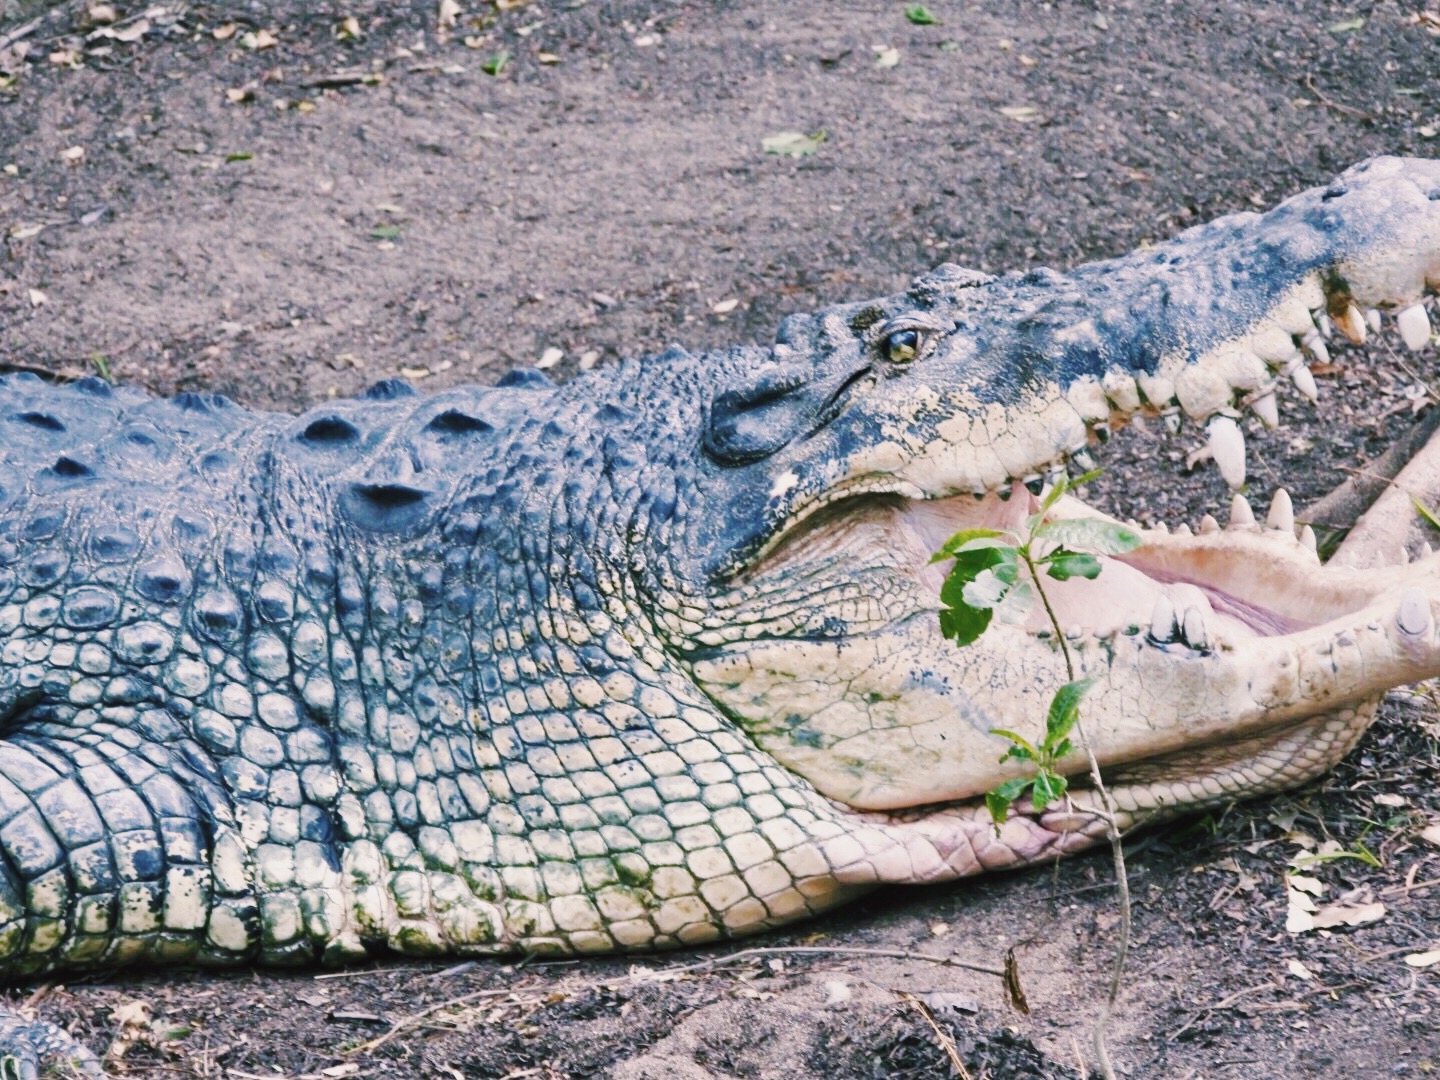 Jaws at Crocodile Park